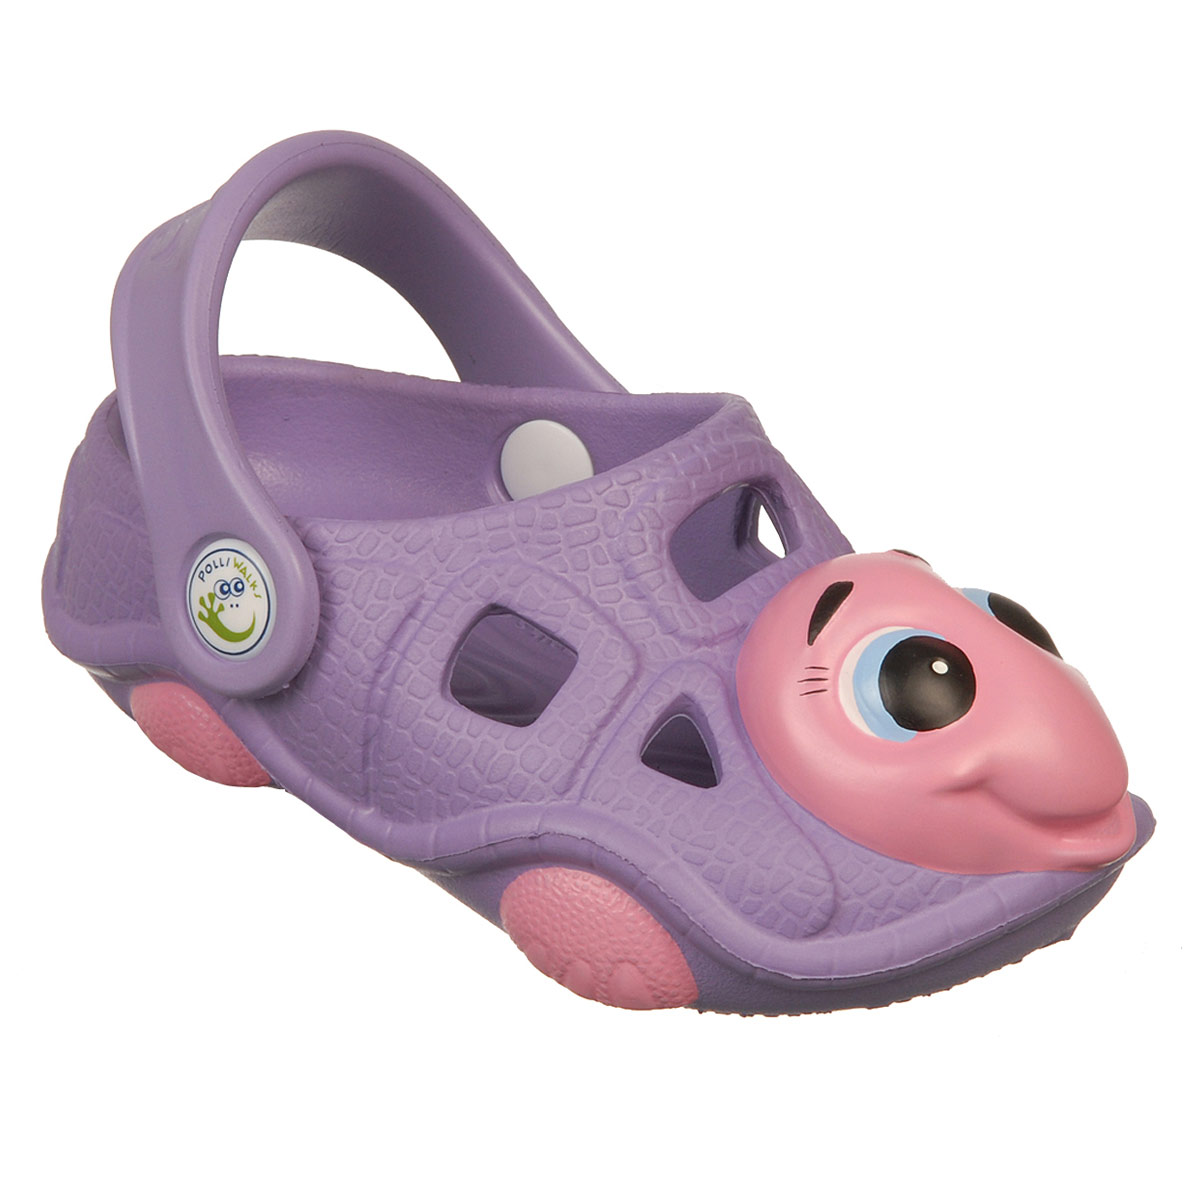 Polliwalks : รองเท้าเด็ก Tory  the Turtle  Purple # 11 